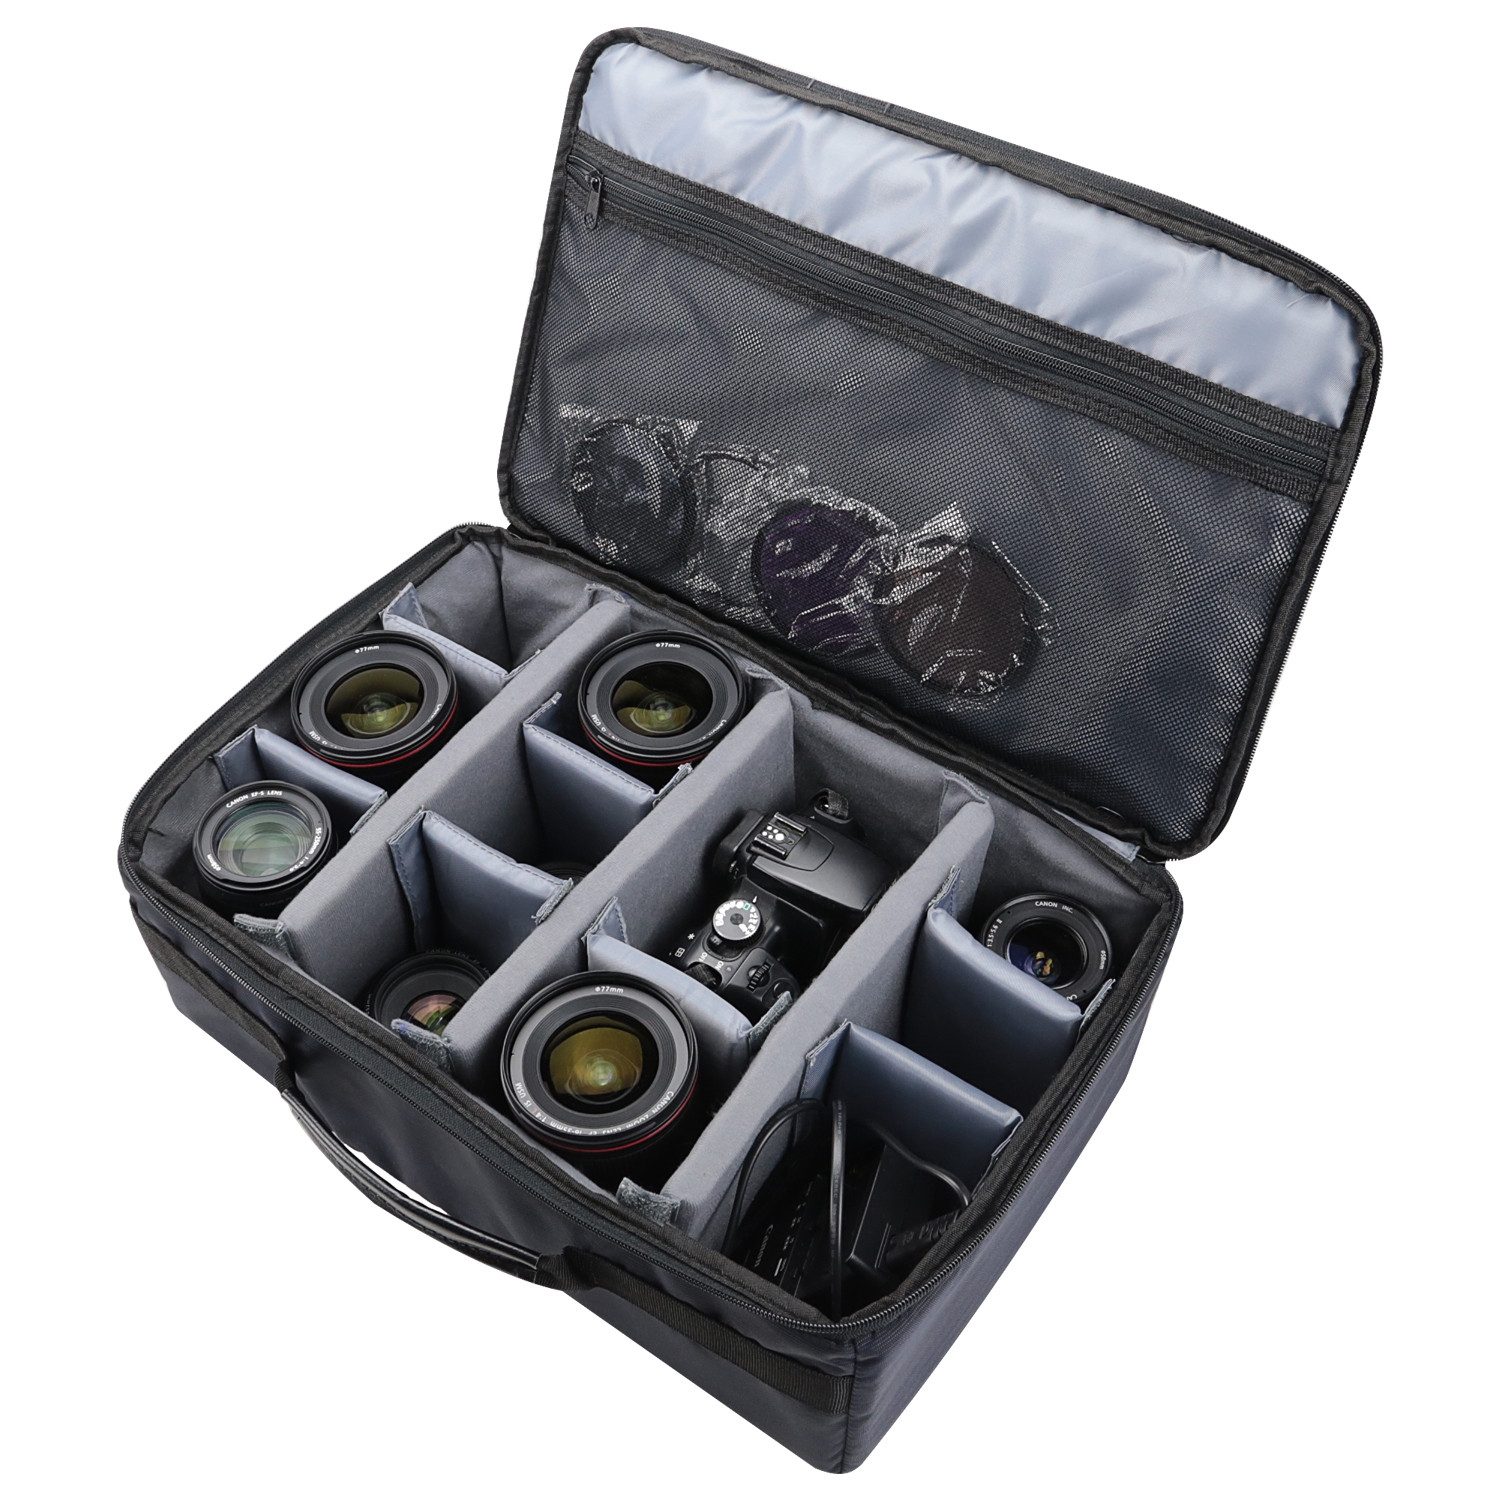 HMF Kameratasche Kamerakoffer individuelle Trennwände, Spiegelreflex, für Kamera Equipment, Waffen und Dokumente, 44 x 28 x 18 cm, schwarz